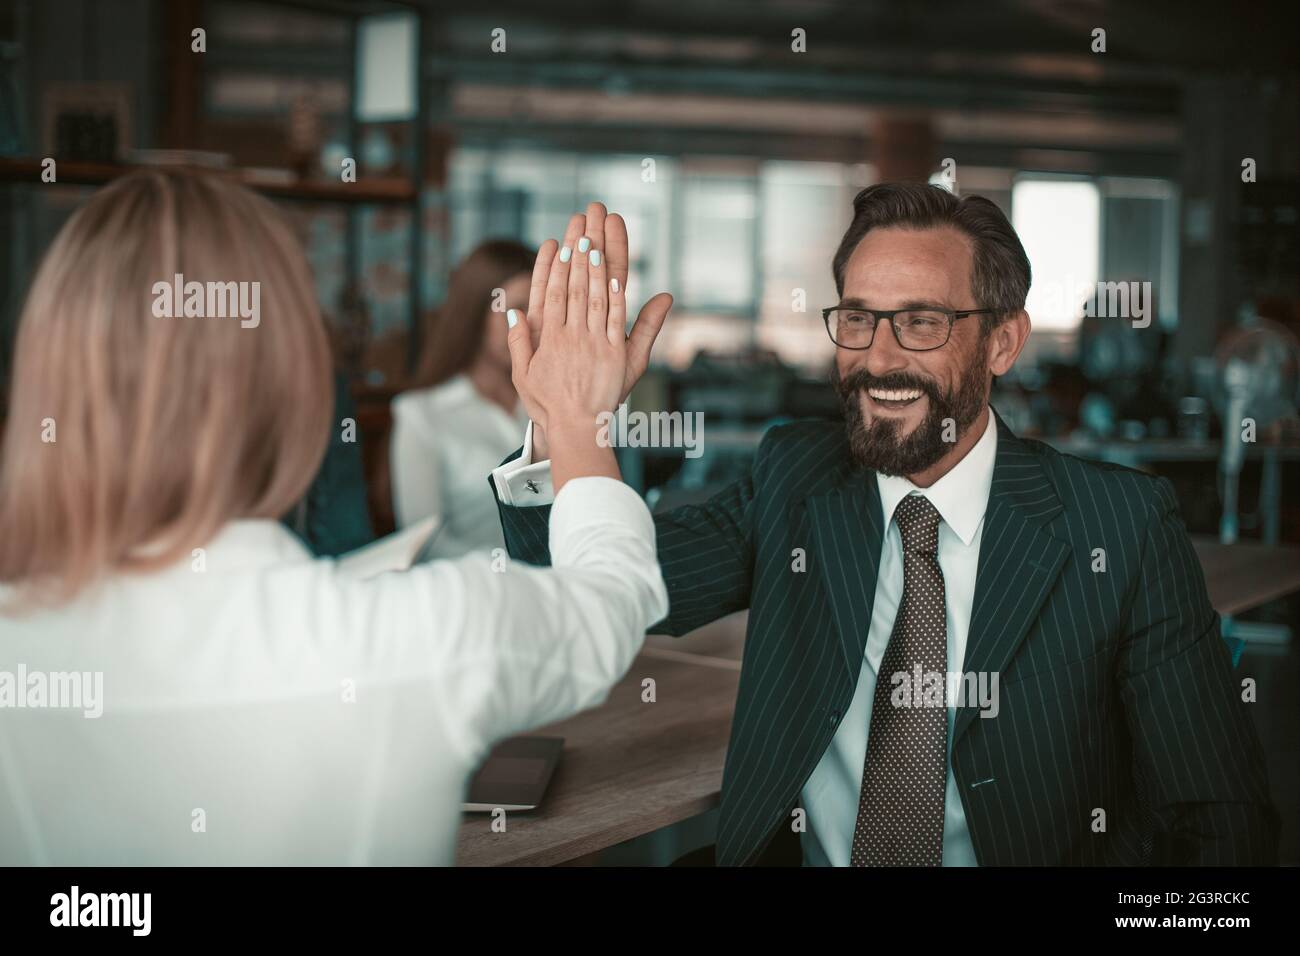 Homme en costume et lunettes donne cinq collègues à une fille dans un chemisier blanc. La relation des collègues est un concept. Quali élevé Banque D'Images